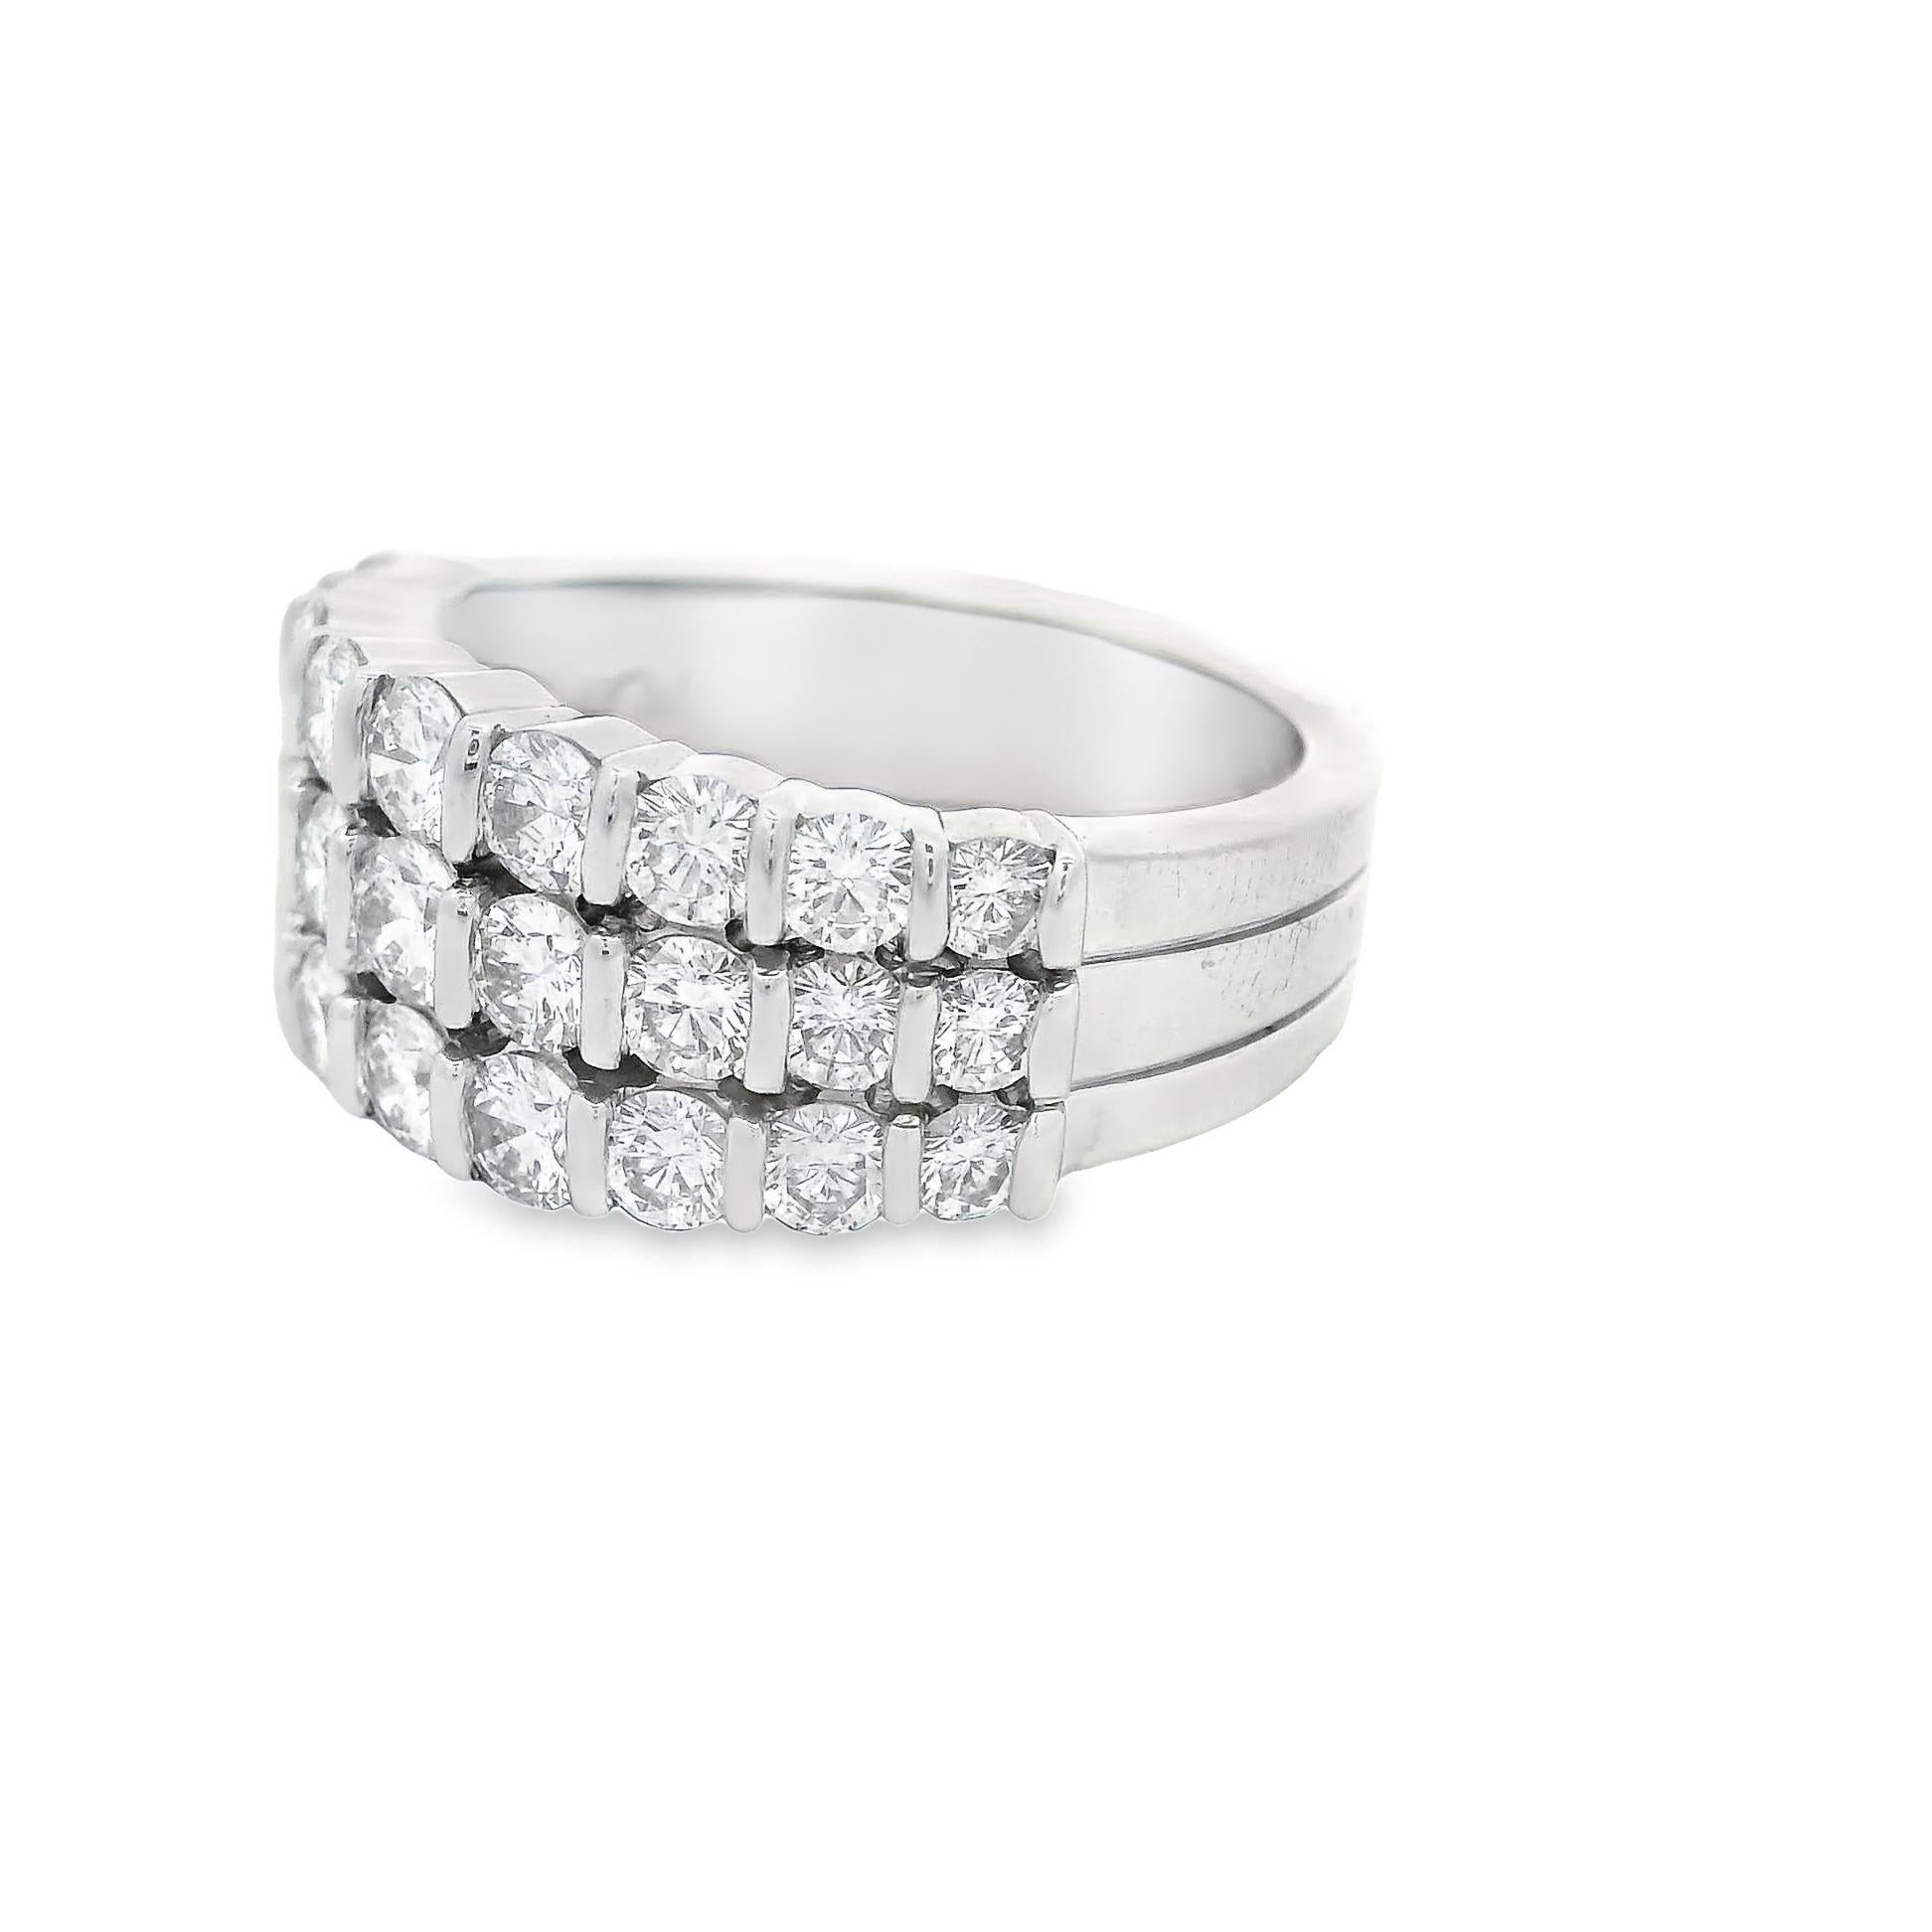 Une belle bague du designer Gemlok, ornée de 1,84 carats de diamants ronds de taille brillant. Des fils de trois rangées de diamants étincelants apportent un minimalisme gracieux et de l'élégance à une bague chatoyante façonnée en platine. Au total,